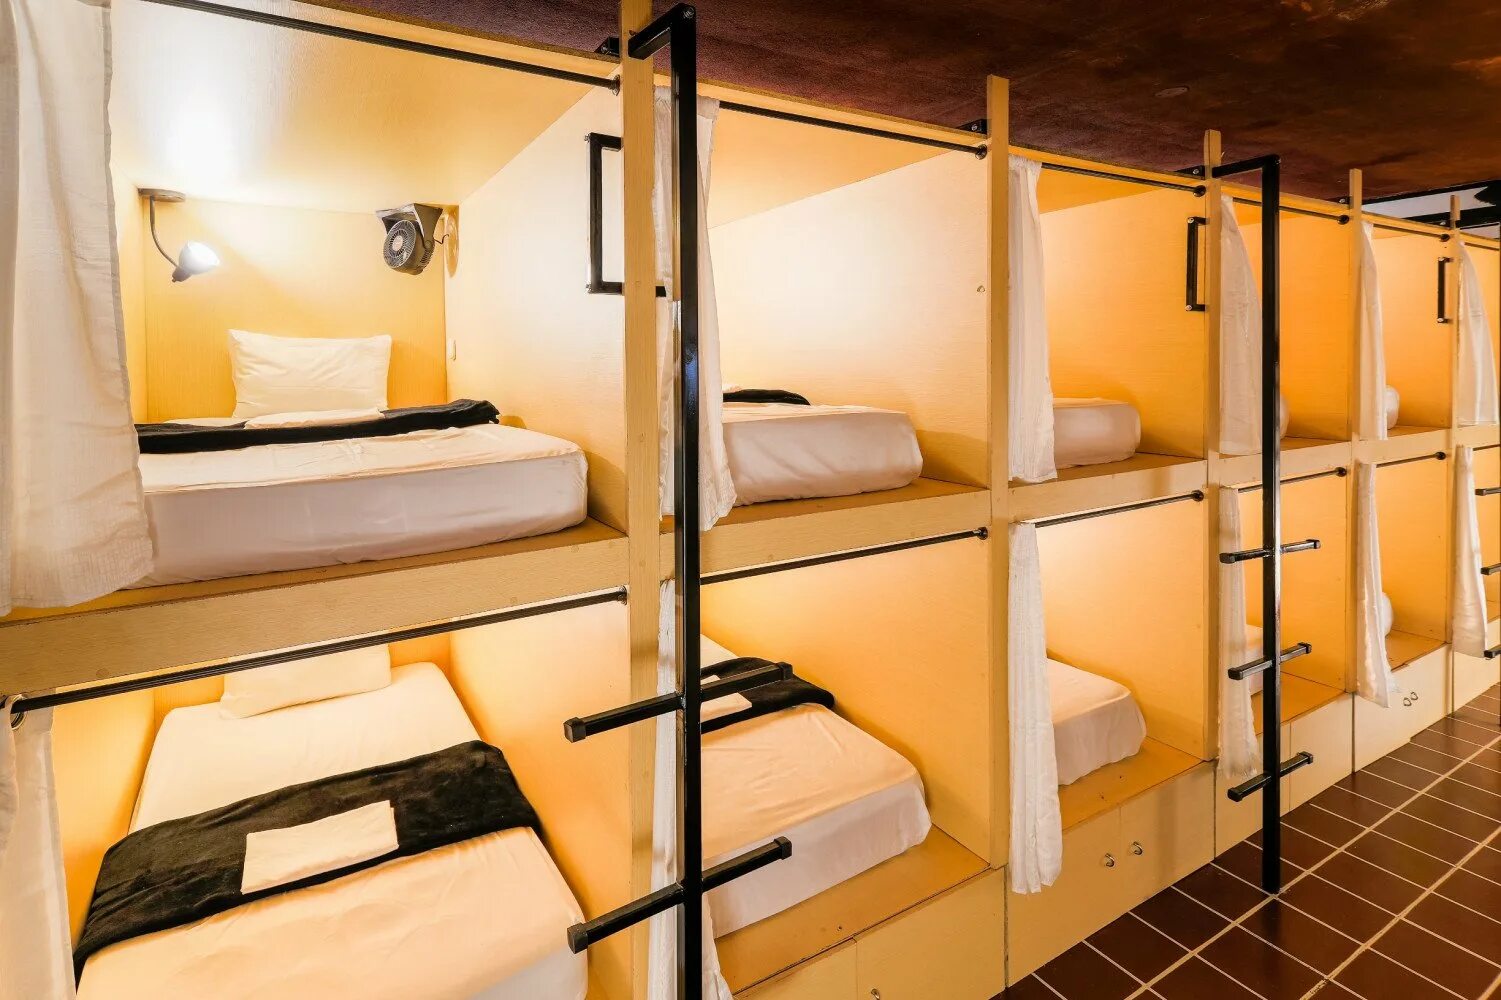 Капсульный хостел. Капсульные кровати для хостела. Отель капсульного типа. Капсулы для хостела.